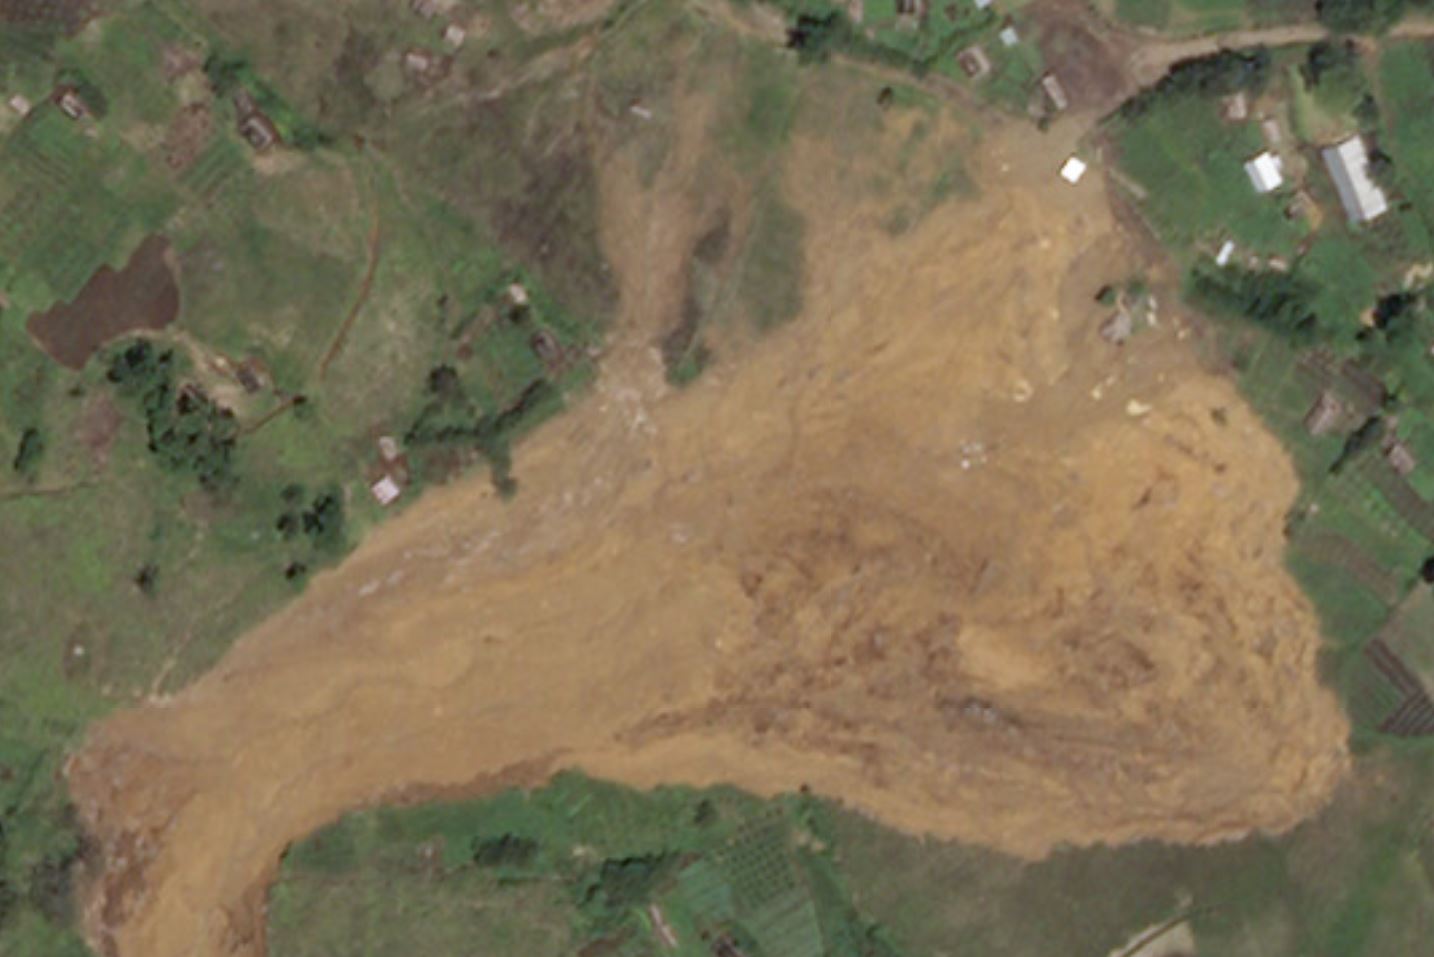 Deposit of the Tendepo landslide